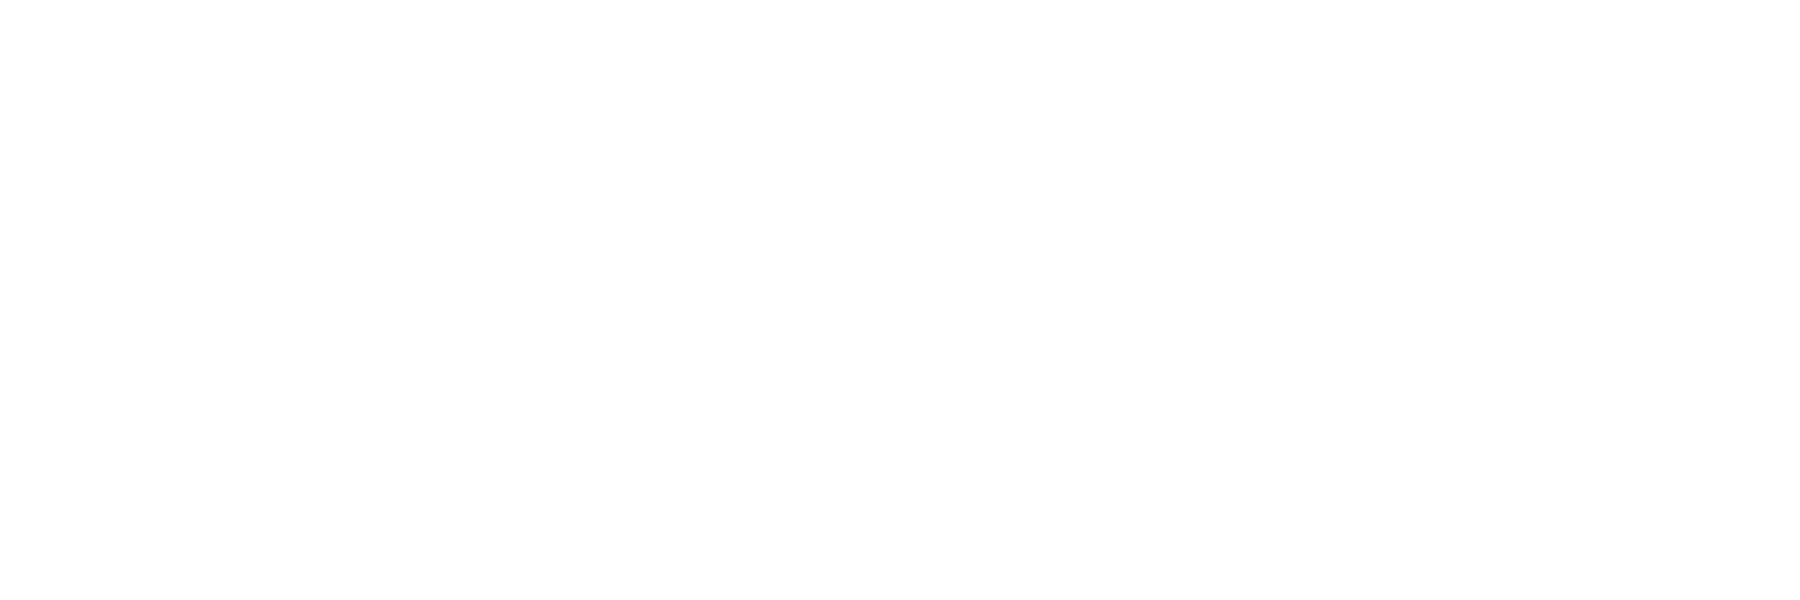 Crosby Law | Crosbylawoffice.com